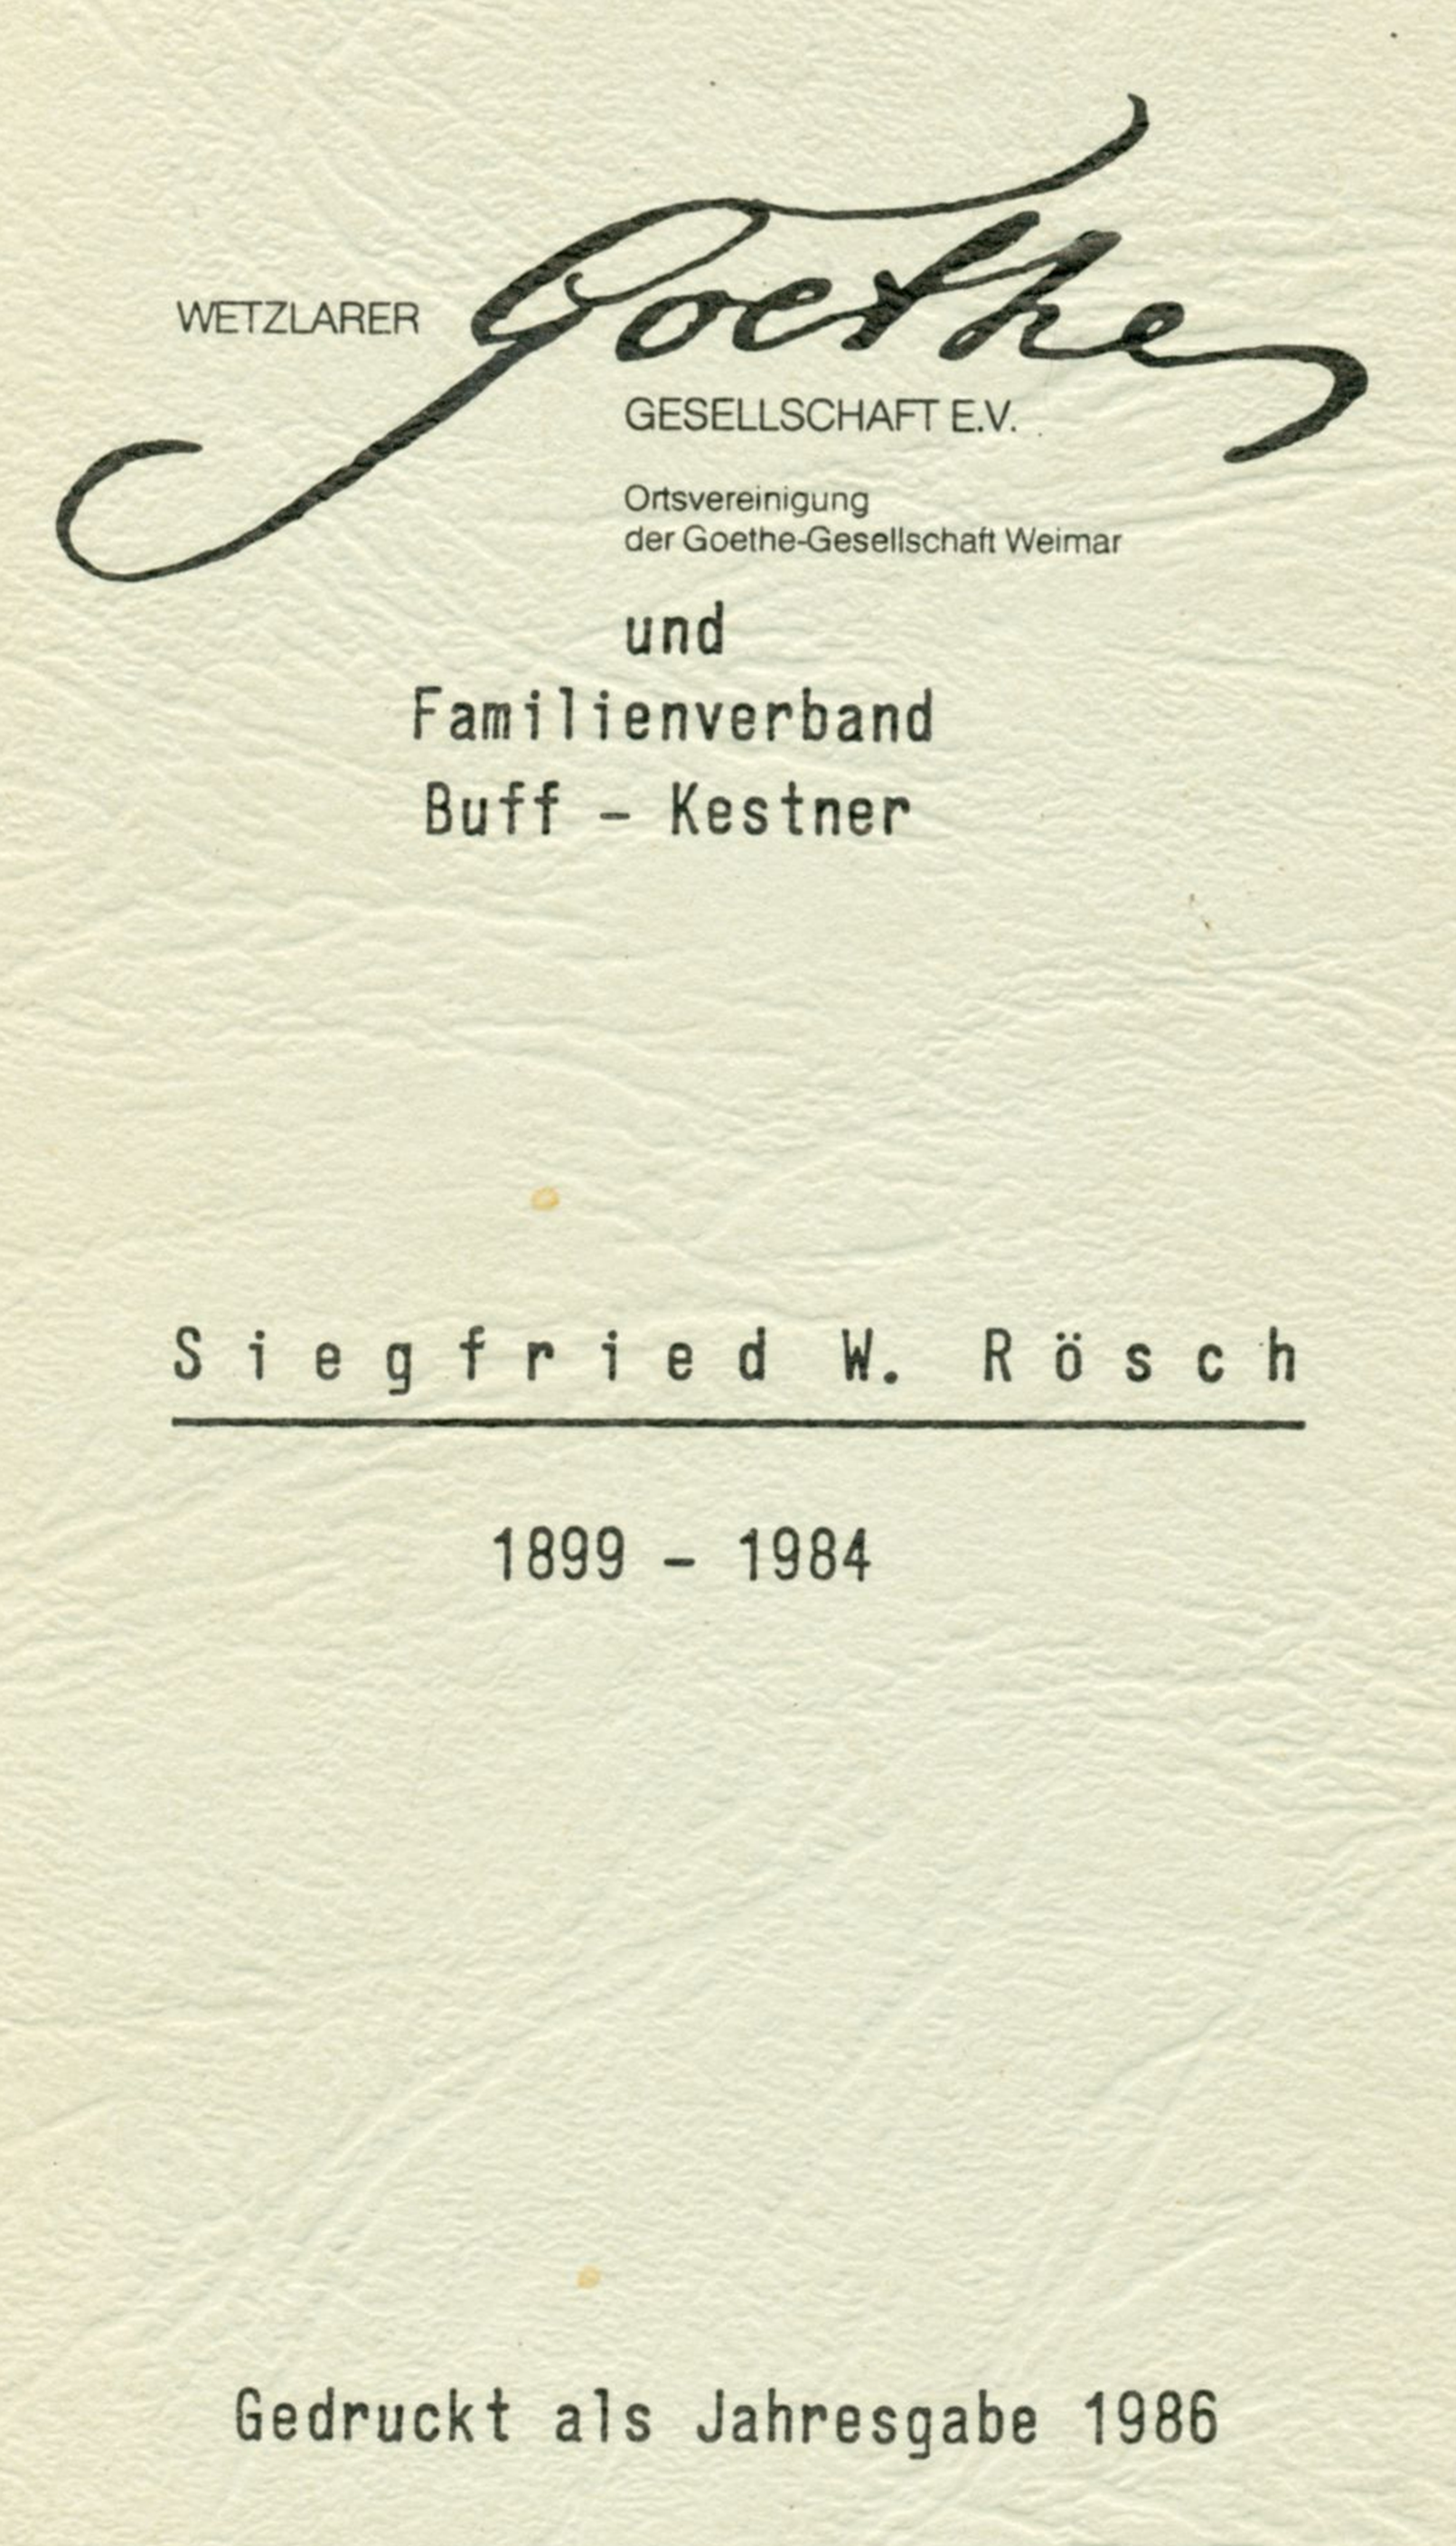 Rösch - Gedenkschrift (1986)